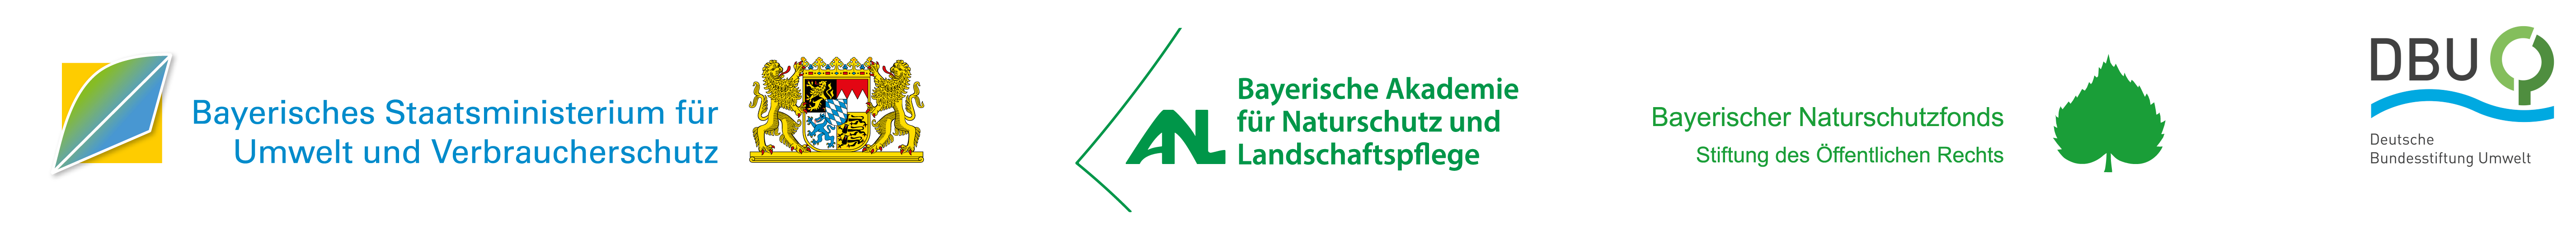 Logos der Förderer Bayerisches Staatsministerium für Umwelt- und Verbraucherschutz, Bayerische Akademie für Naturschutz und Landschaftspflege, Bayerischer Naturschutzfond, Deutsche Bundesstiftung Umwelt